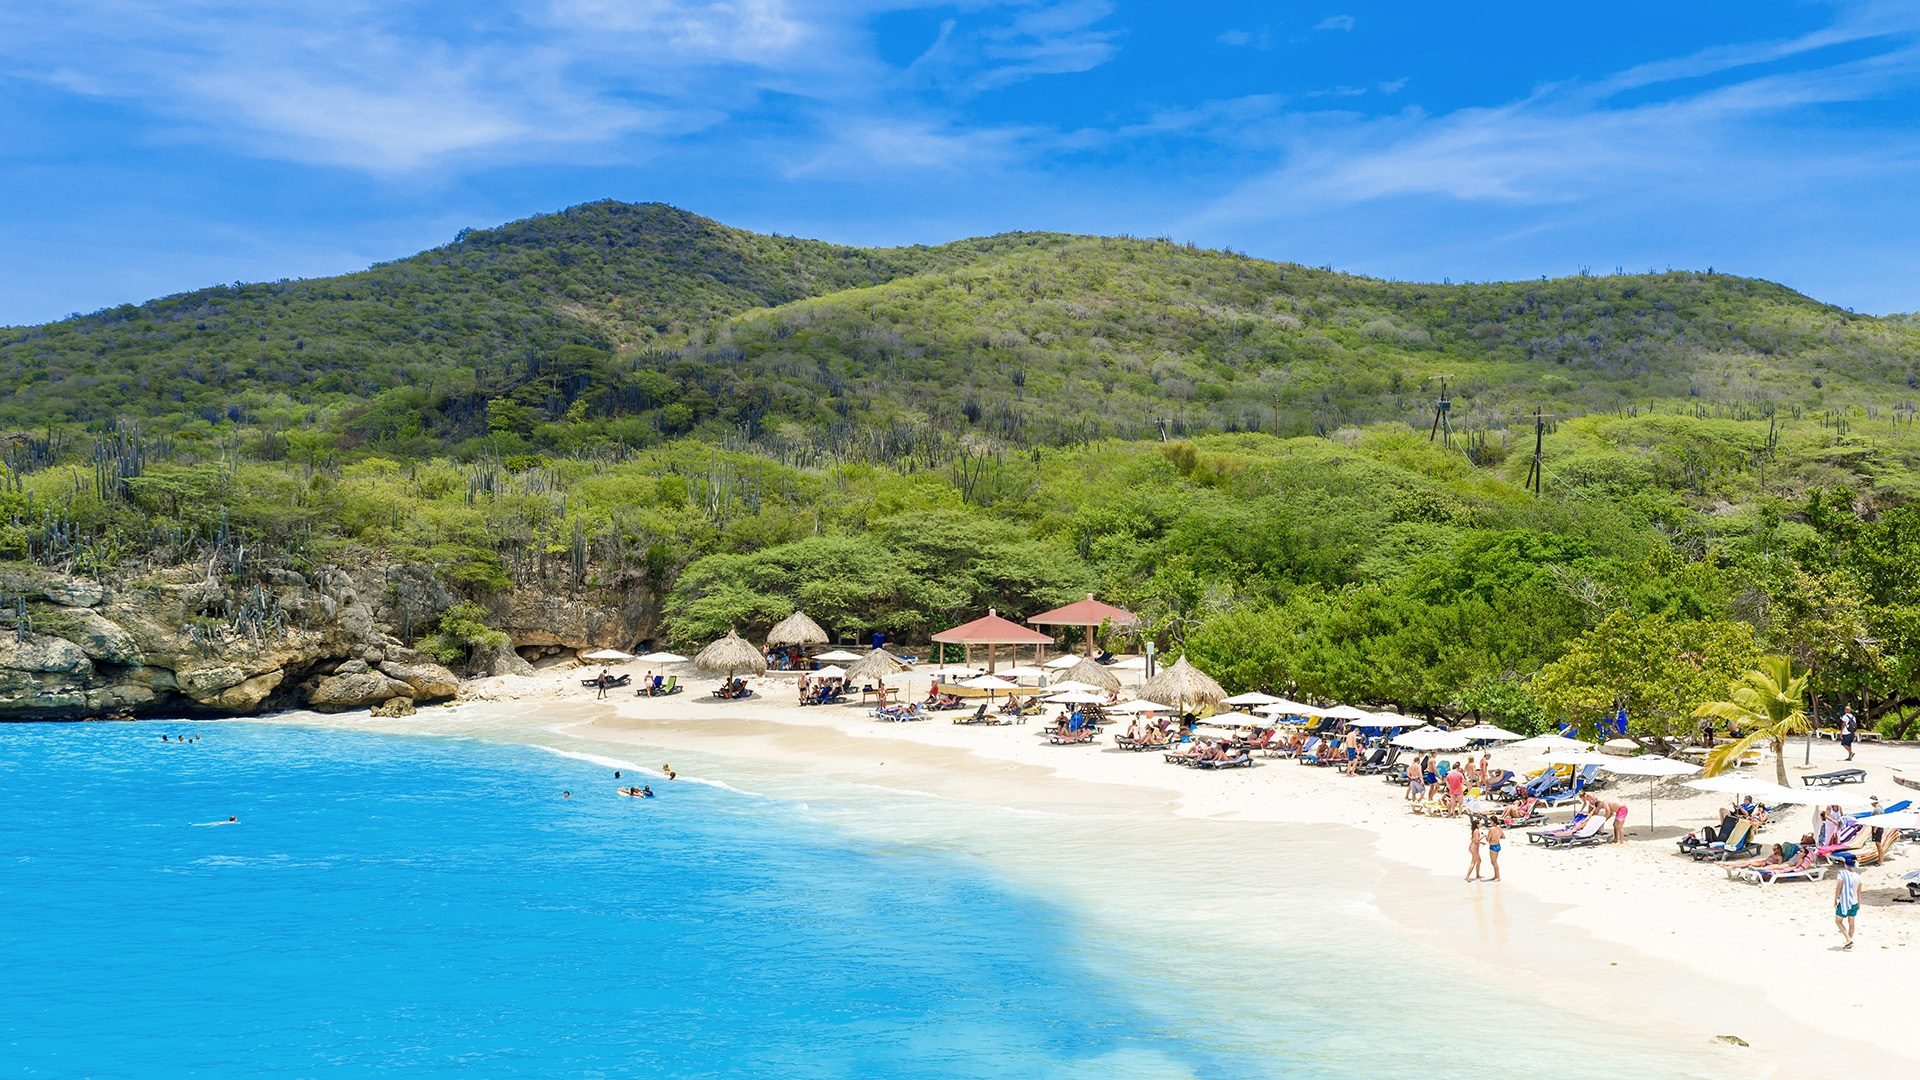 Rajska biała plaża na karaibskiej wyspie Curacao słynącej z błękitnego likieru o tej samej nazwie